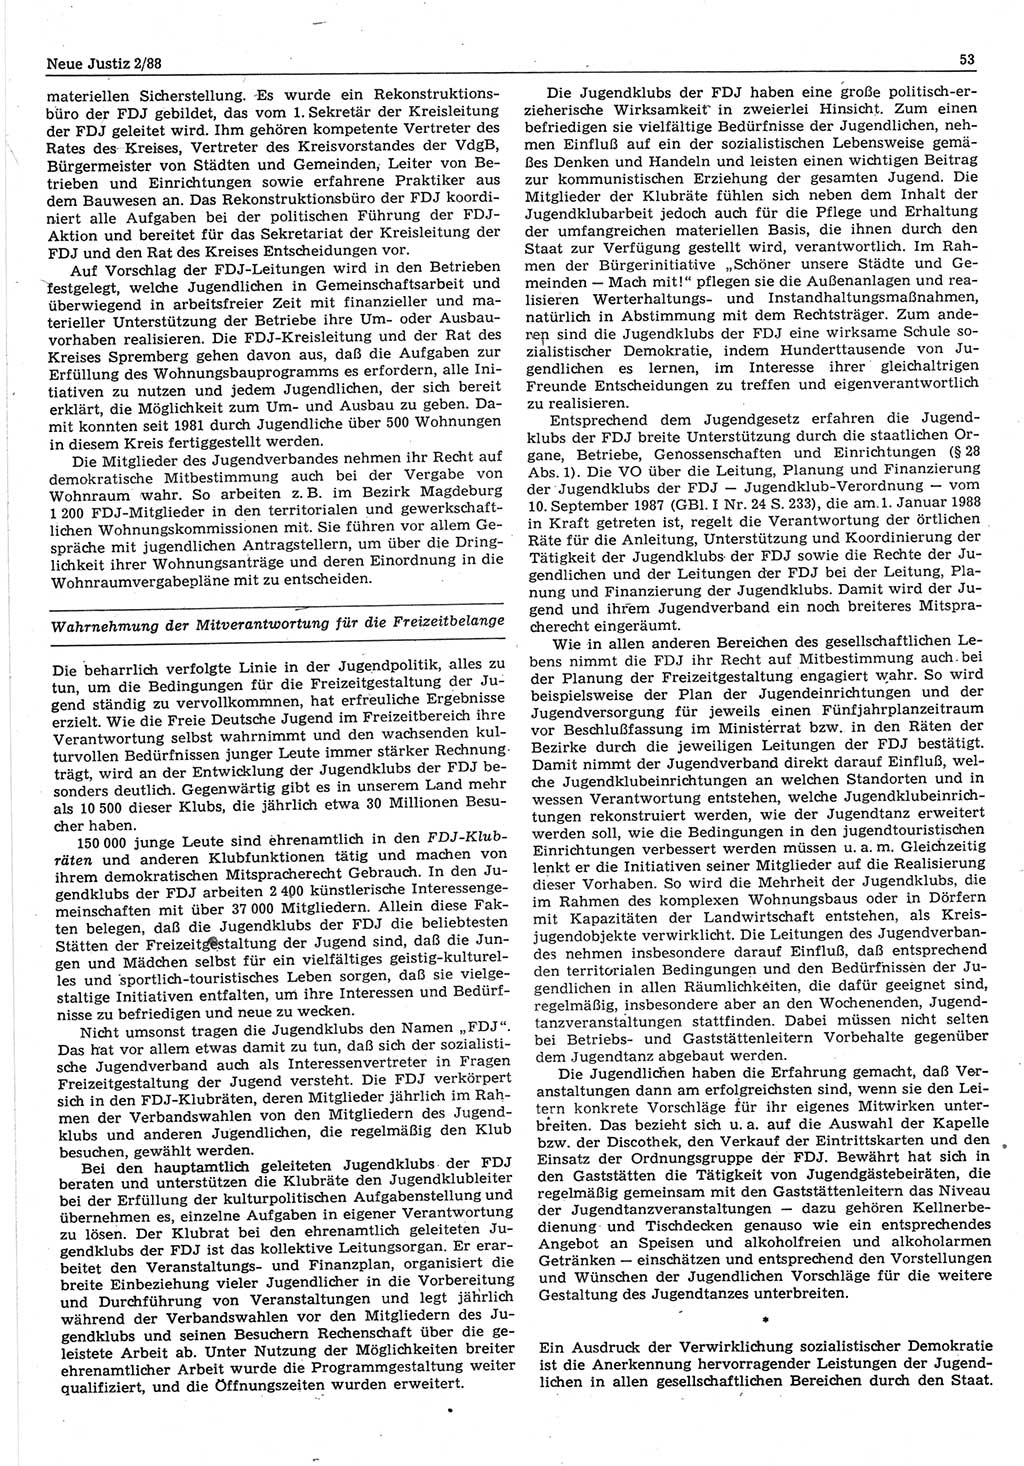 Neue Justiz (NJ), Zeitschrift für sozialistisches Recht und Gesetzlichkeit [Deutsche Demokratische Republik (DDR)], 42. Jahrgang 1988, Seite 53 (NJ DDR 1988, S. 53)